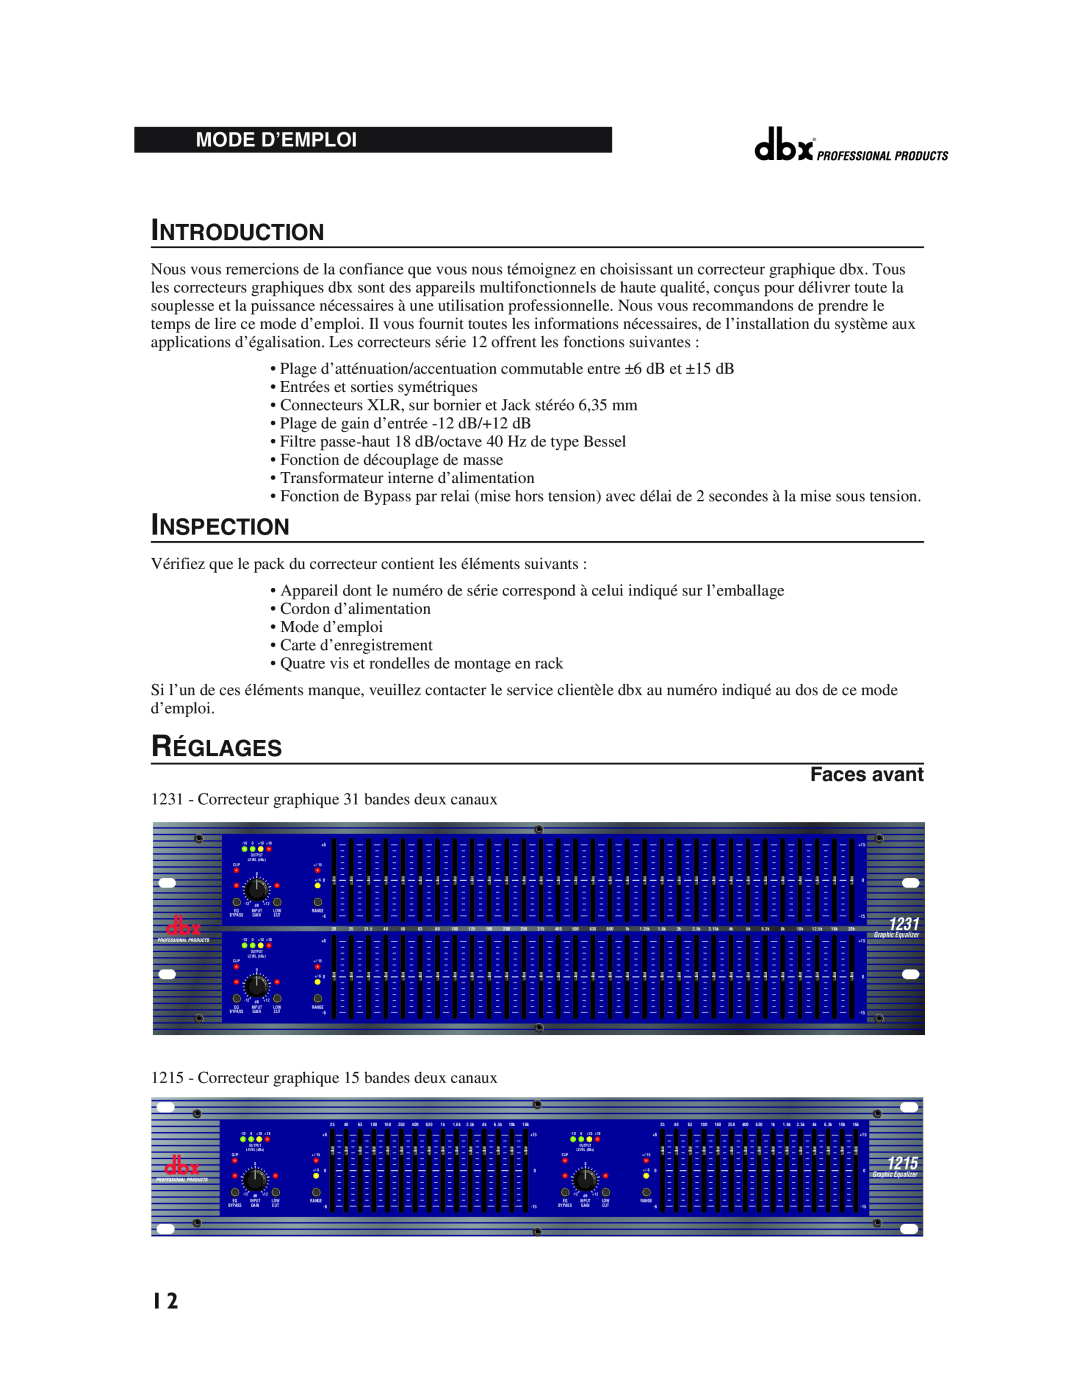 dbx Pro 12 Series operation manual Introduction, Inspection, Réglages, Mode D’Emploi, Faces avant, 1231, 1215 